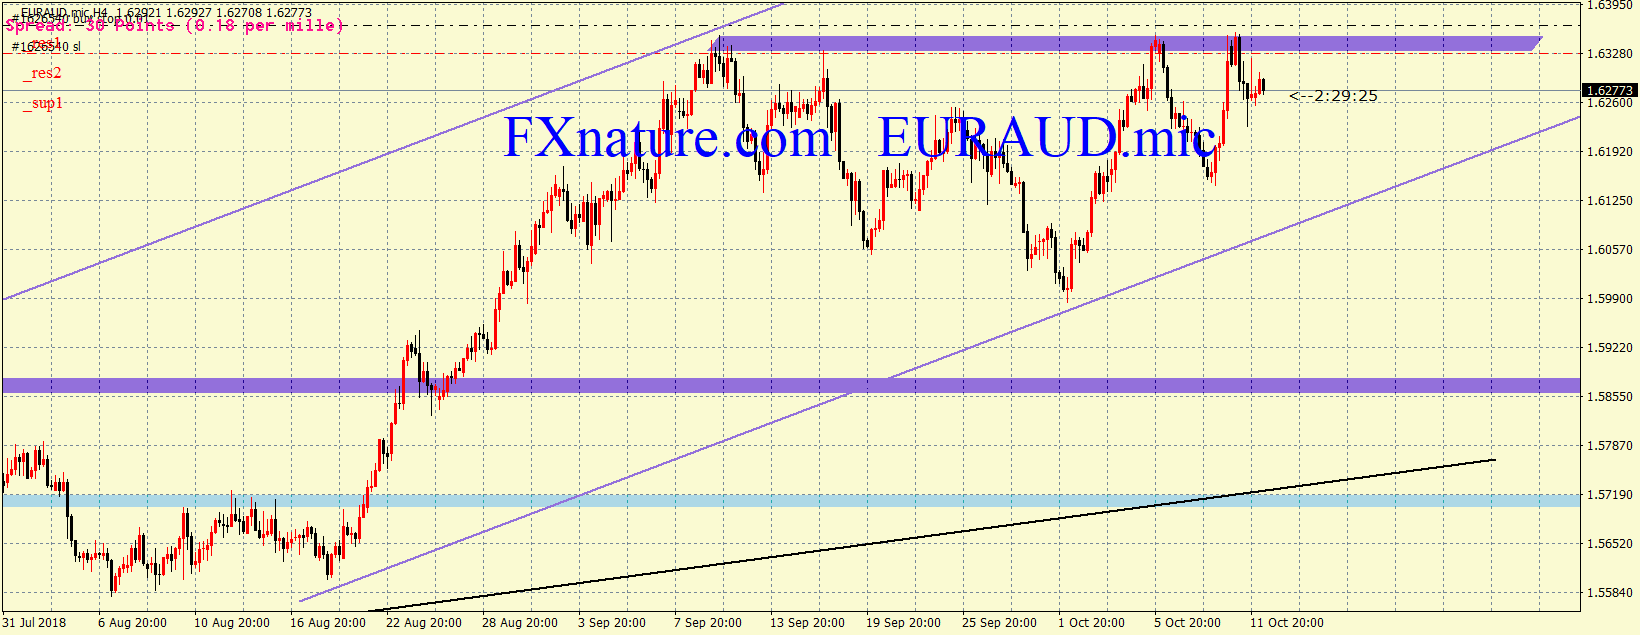 یورو دلار استرالیا